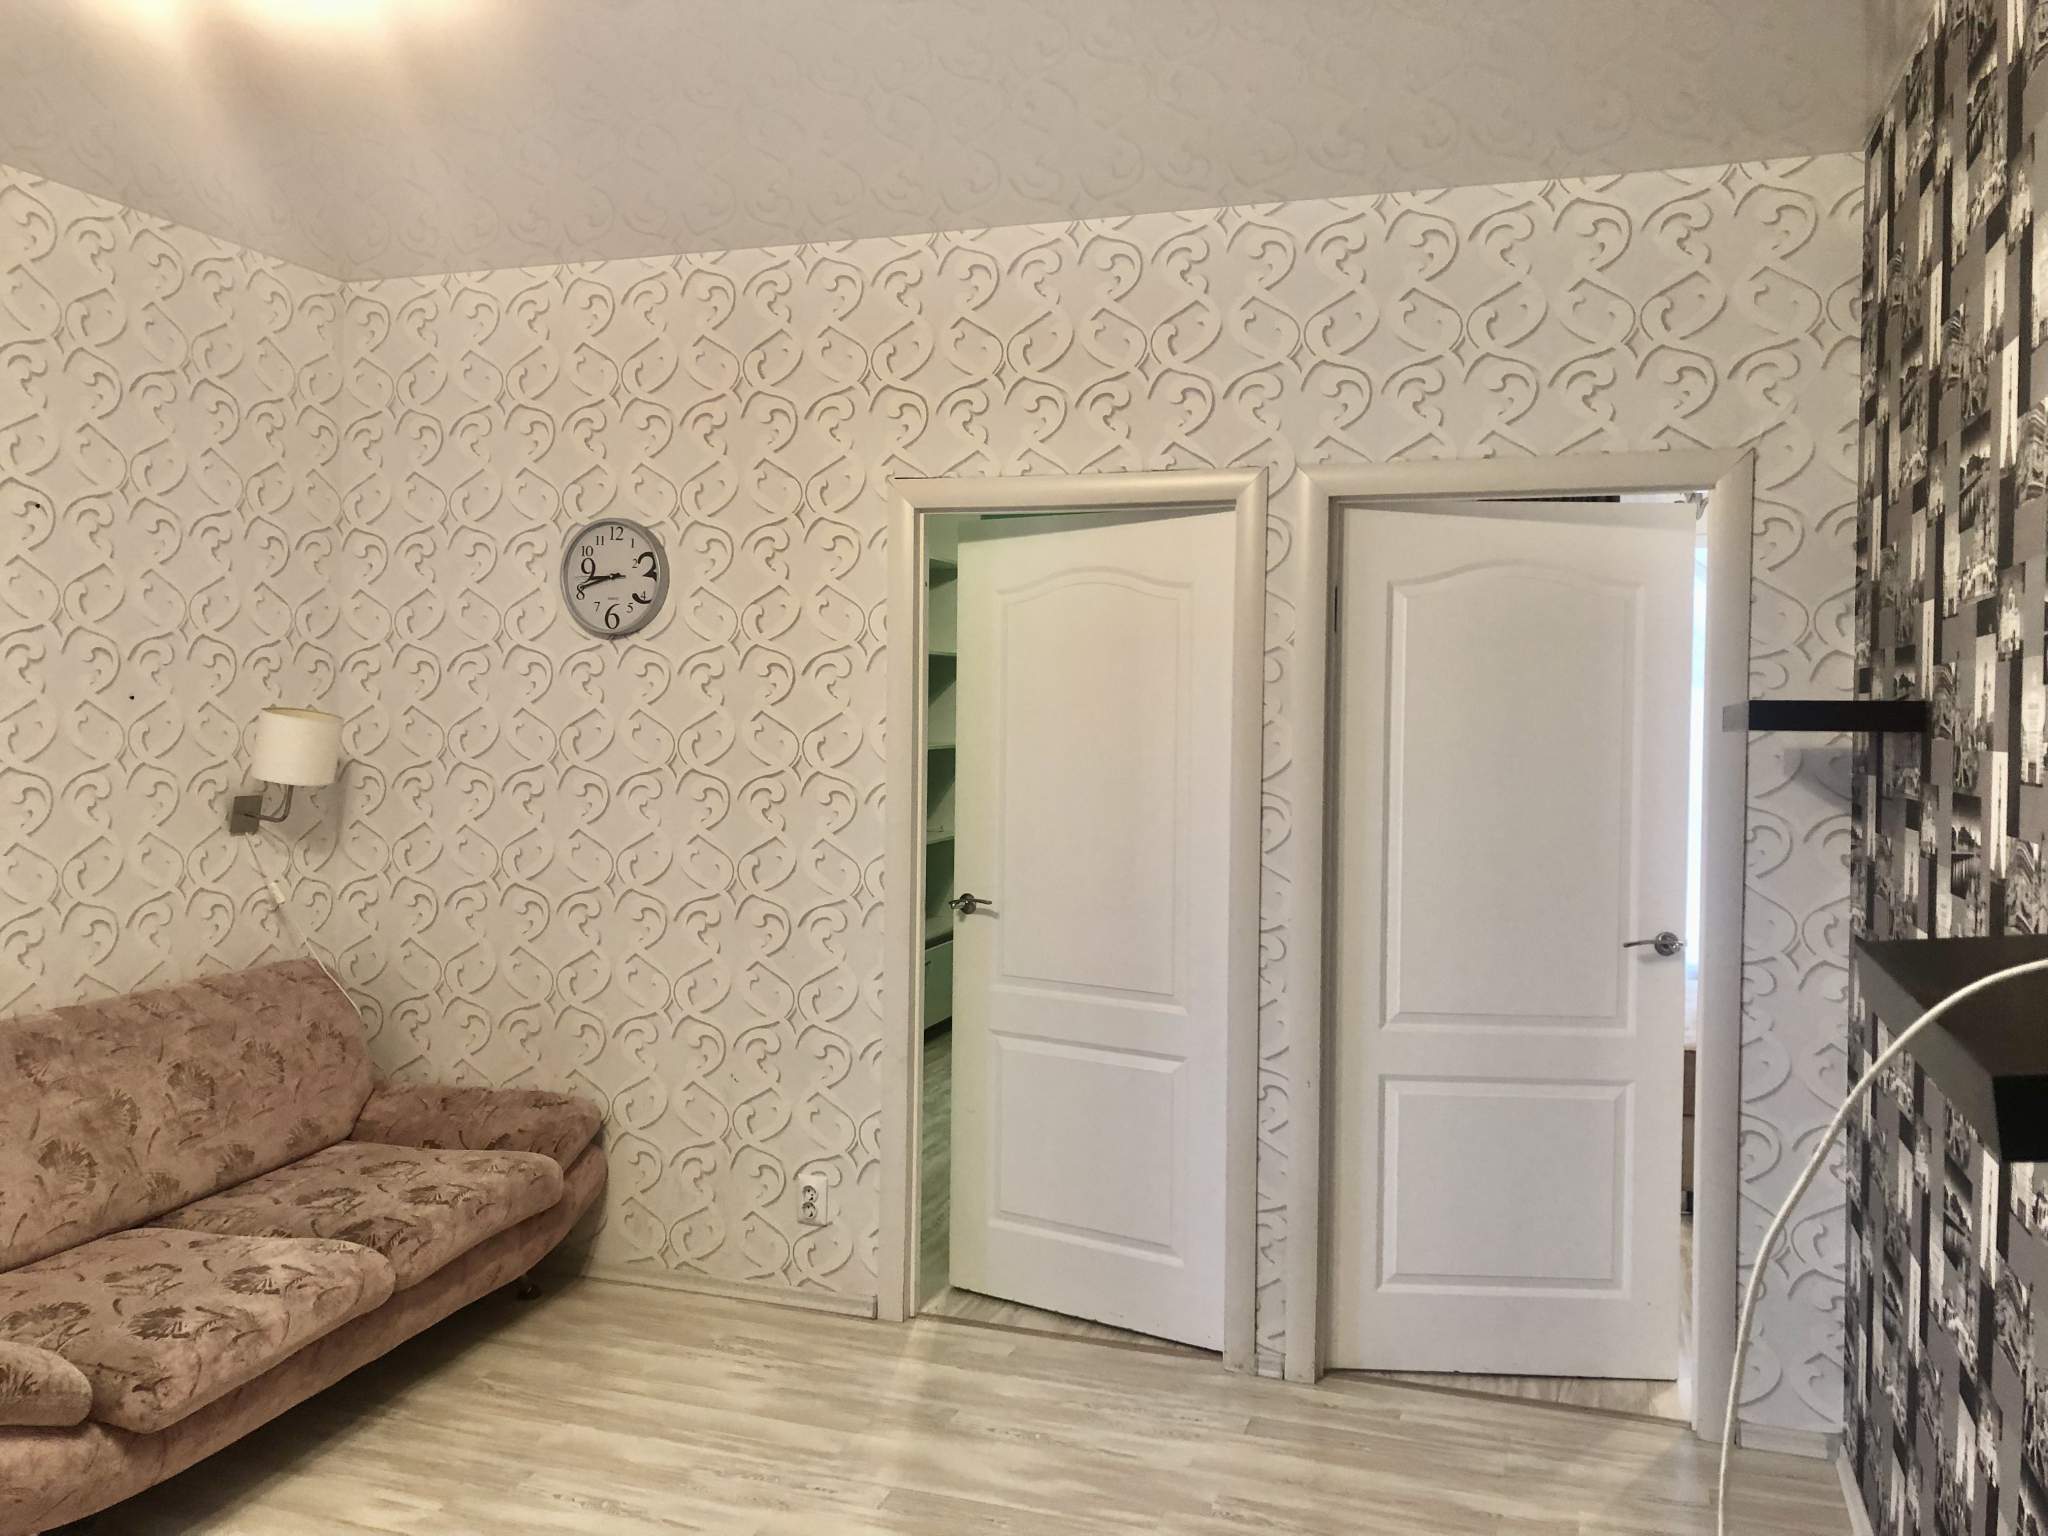 Аренда 2-комнатной квартиры, Псков, Алексея Алехина,  д.30